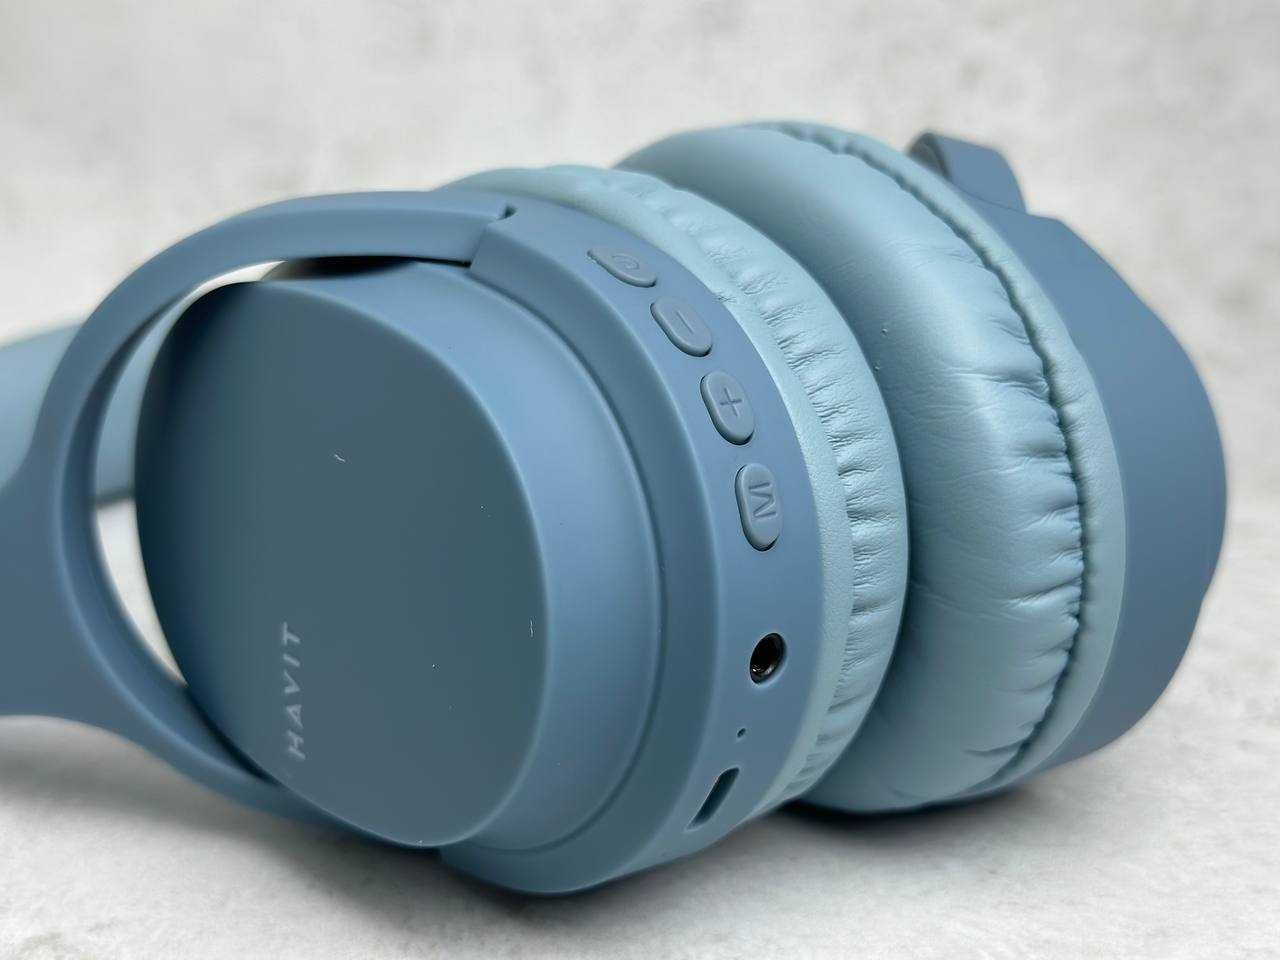 Навушники накладні бездротові HAVIT HV-I62 Deep Blue Купити Гарнітура